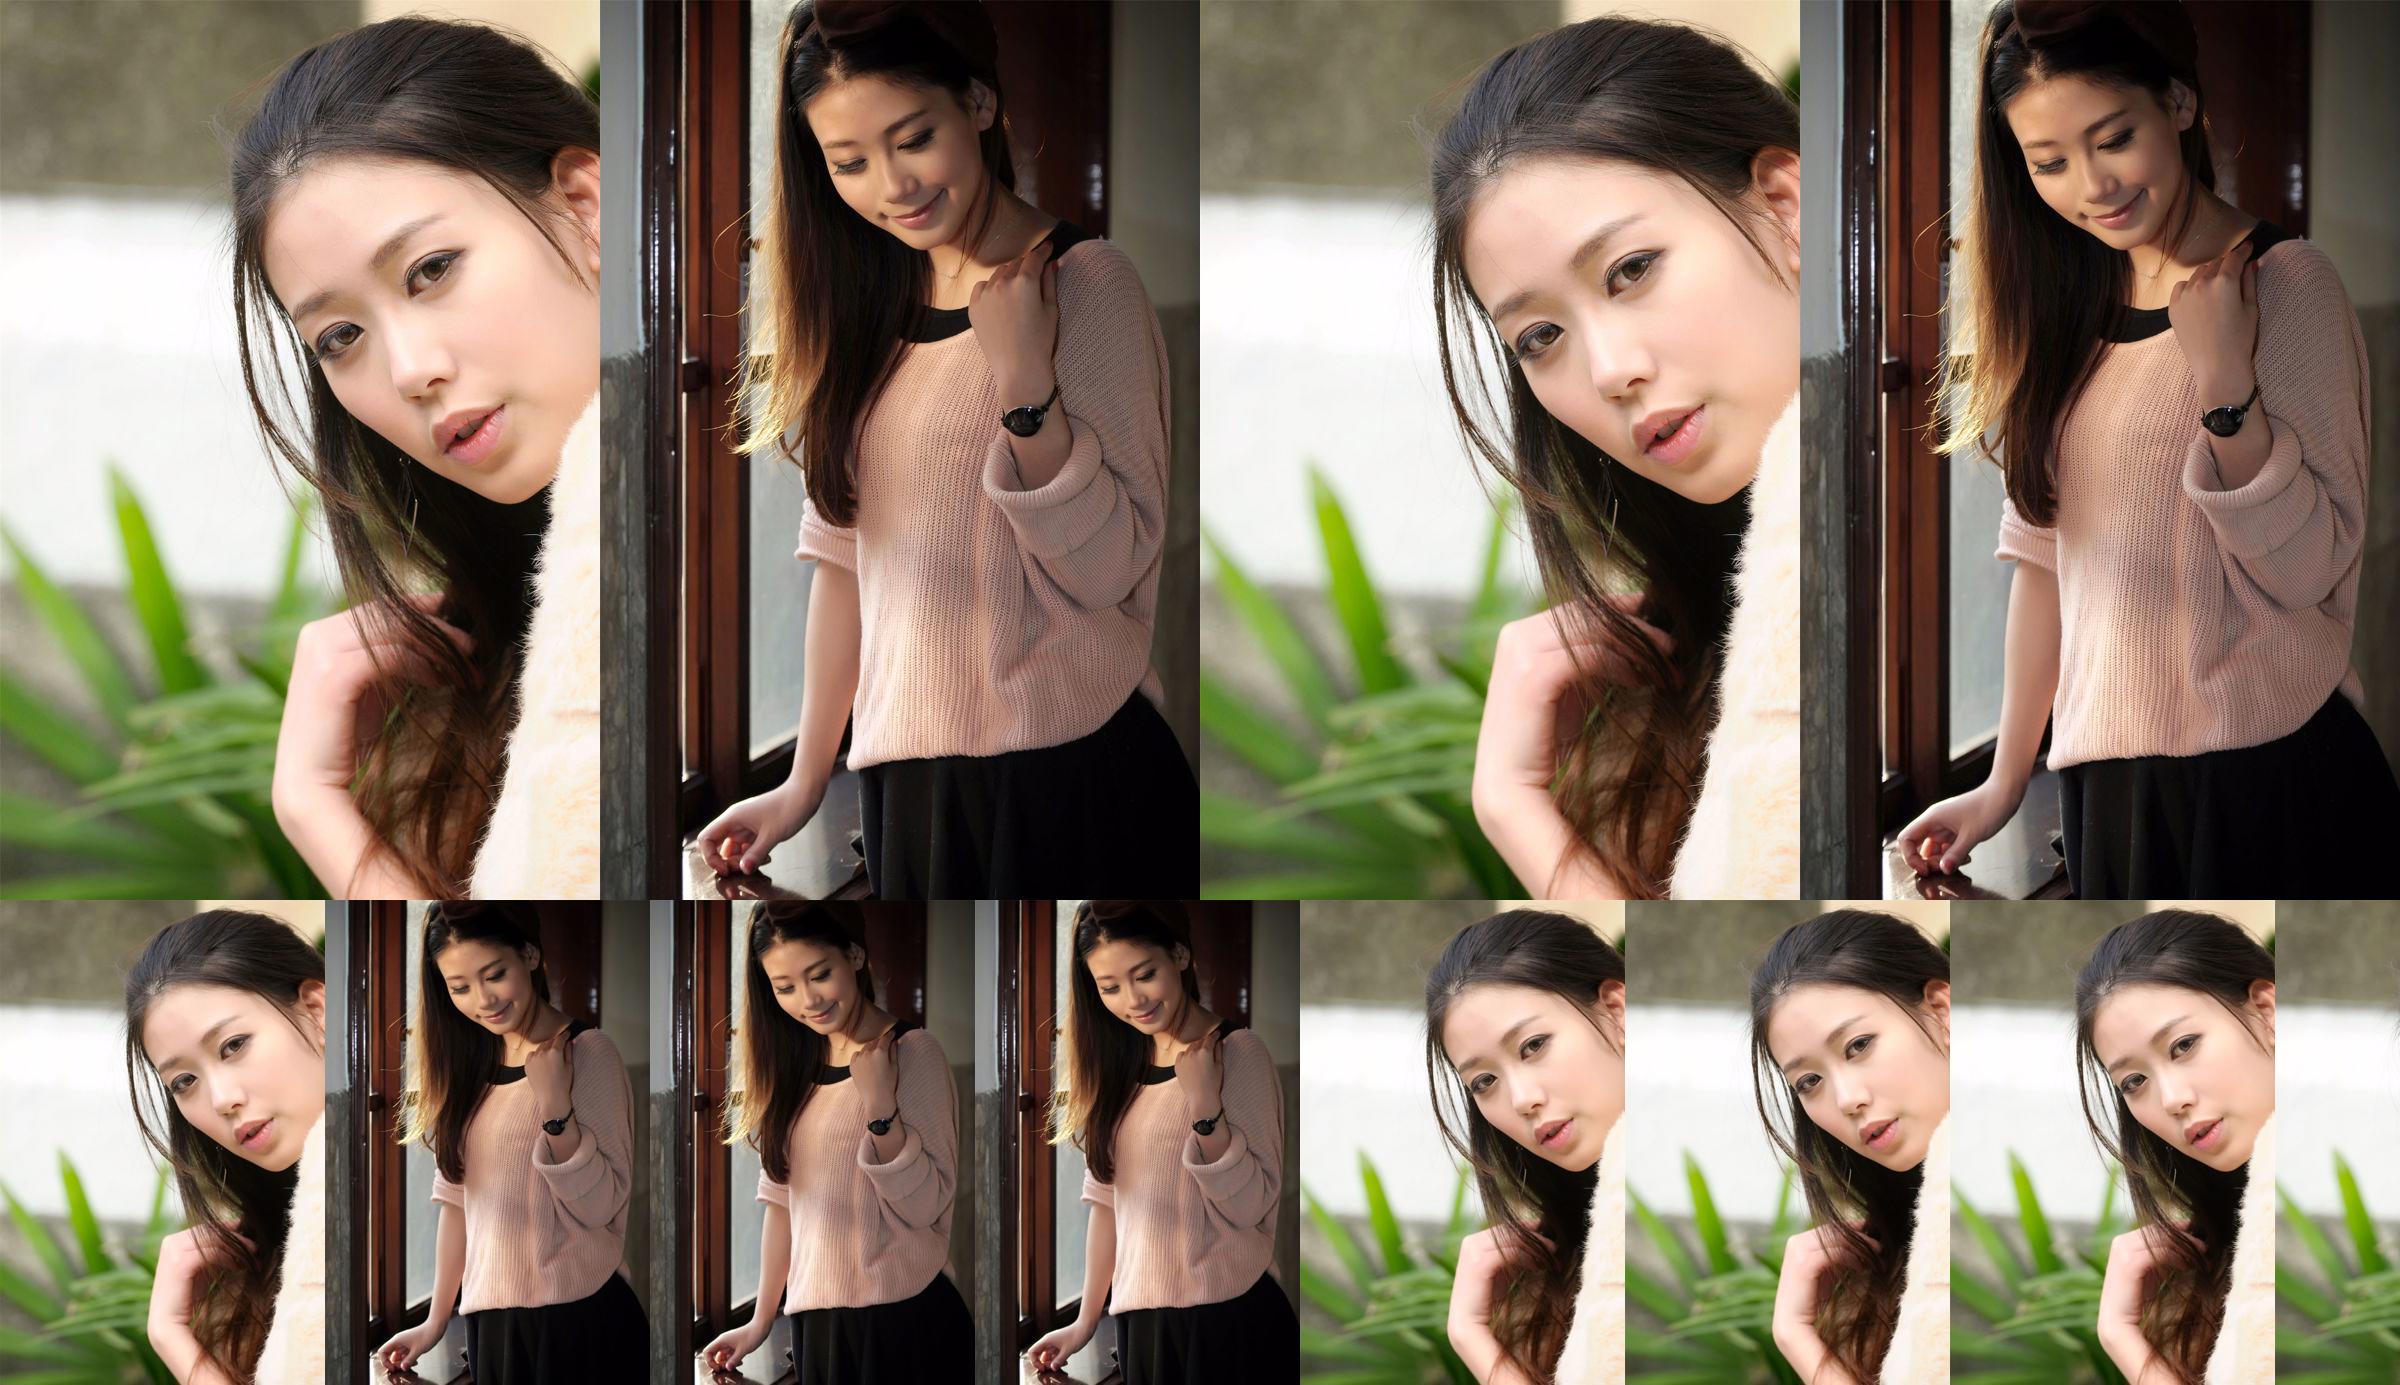 Die taiwanesische Göttin Jia Belle "Aesthetic Fashion Outing" No.b4fe97 Seite 1